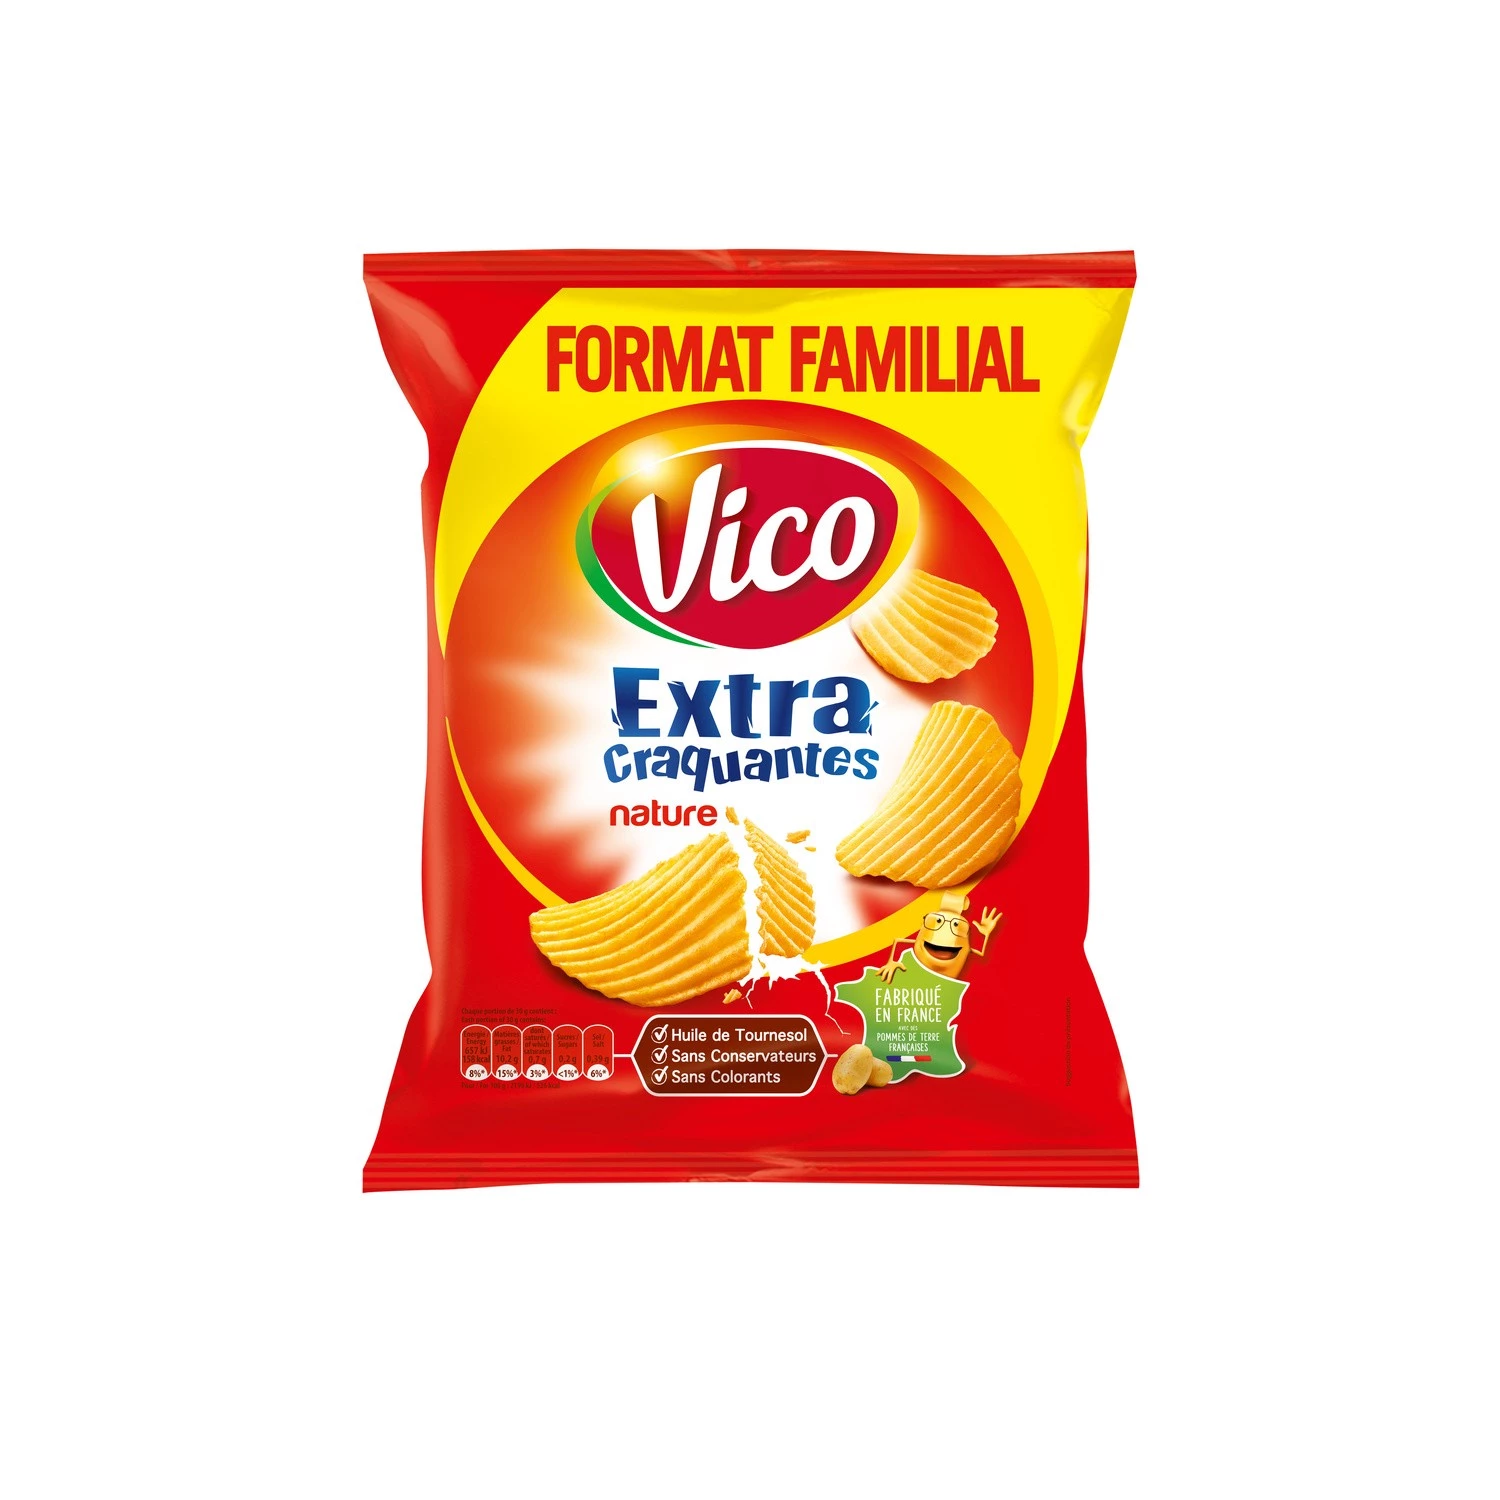 Extra Crunchy Crisps Plain, 270g - VICO